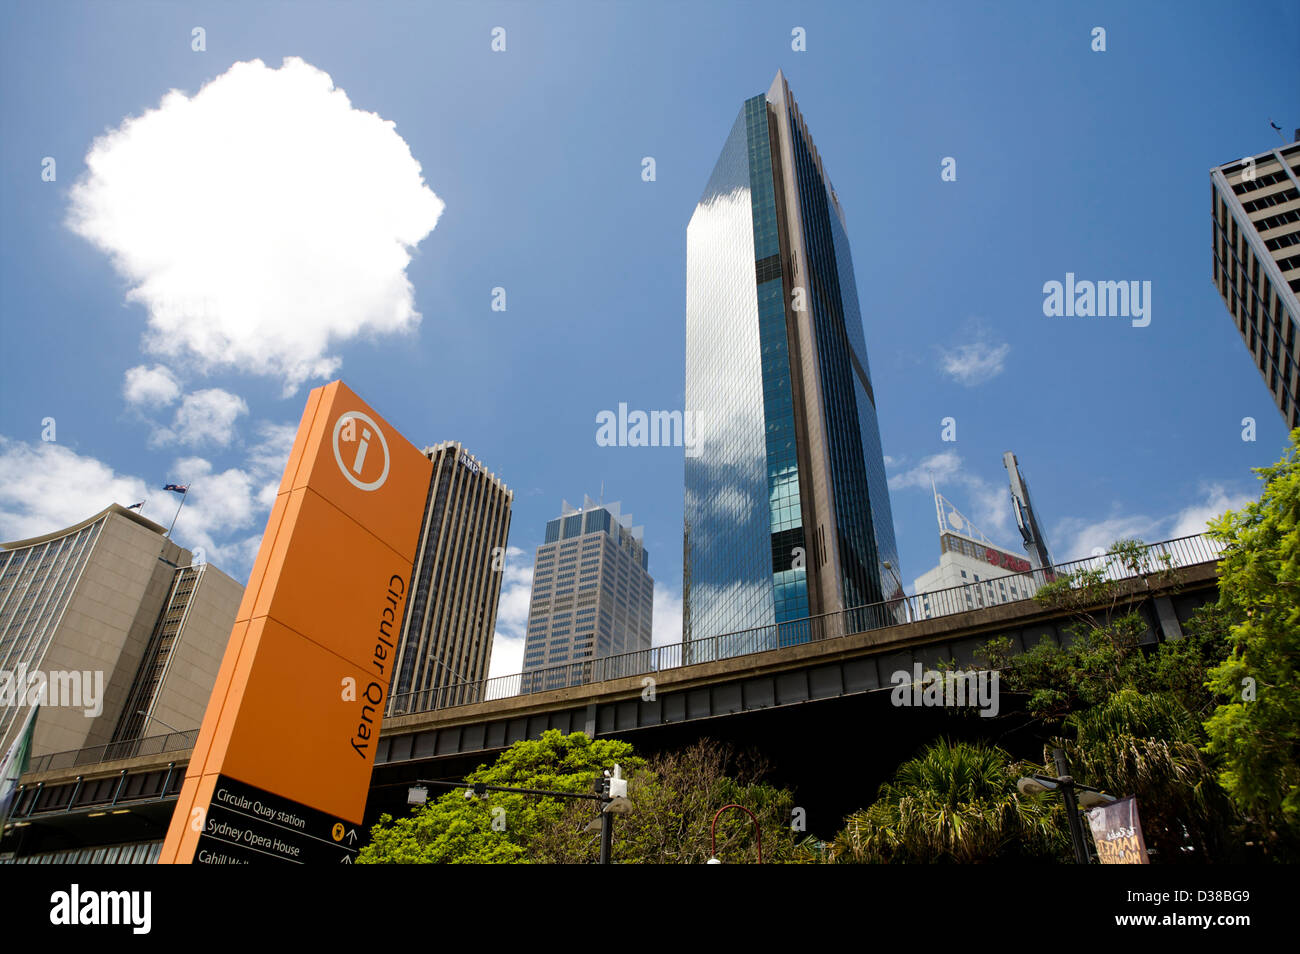 Un grand panneau du point d'information orange à Circular Quay Sydney Australie avec indicateurs de dire aux gens où aller. Banque D'Images